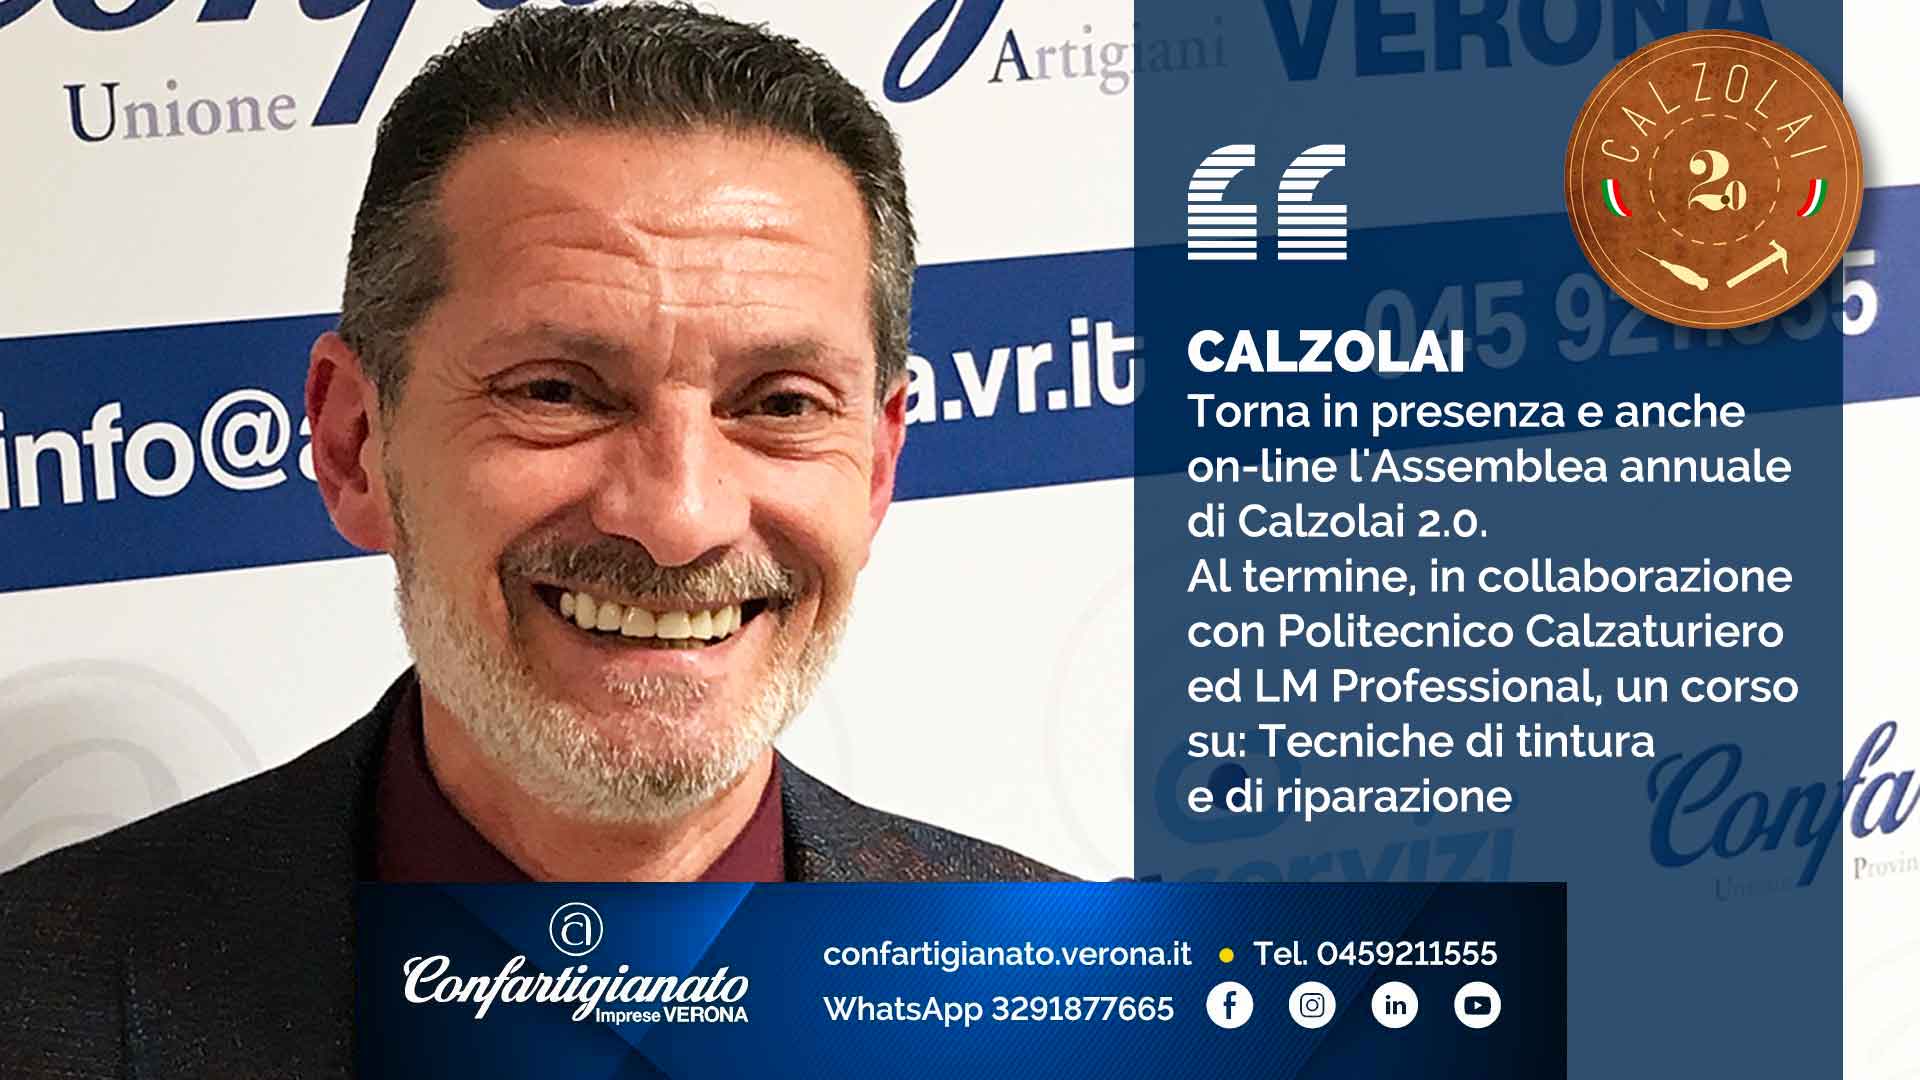 CALZOLAI – Torna in presenza e anche on-line l'Assemblea annuale di Calzolai 2.0. Al termine, in collaborazione con il Politecnico Calzaturiero ed LM Professional, un corso su: Tecniche di tintura e di riparazione